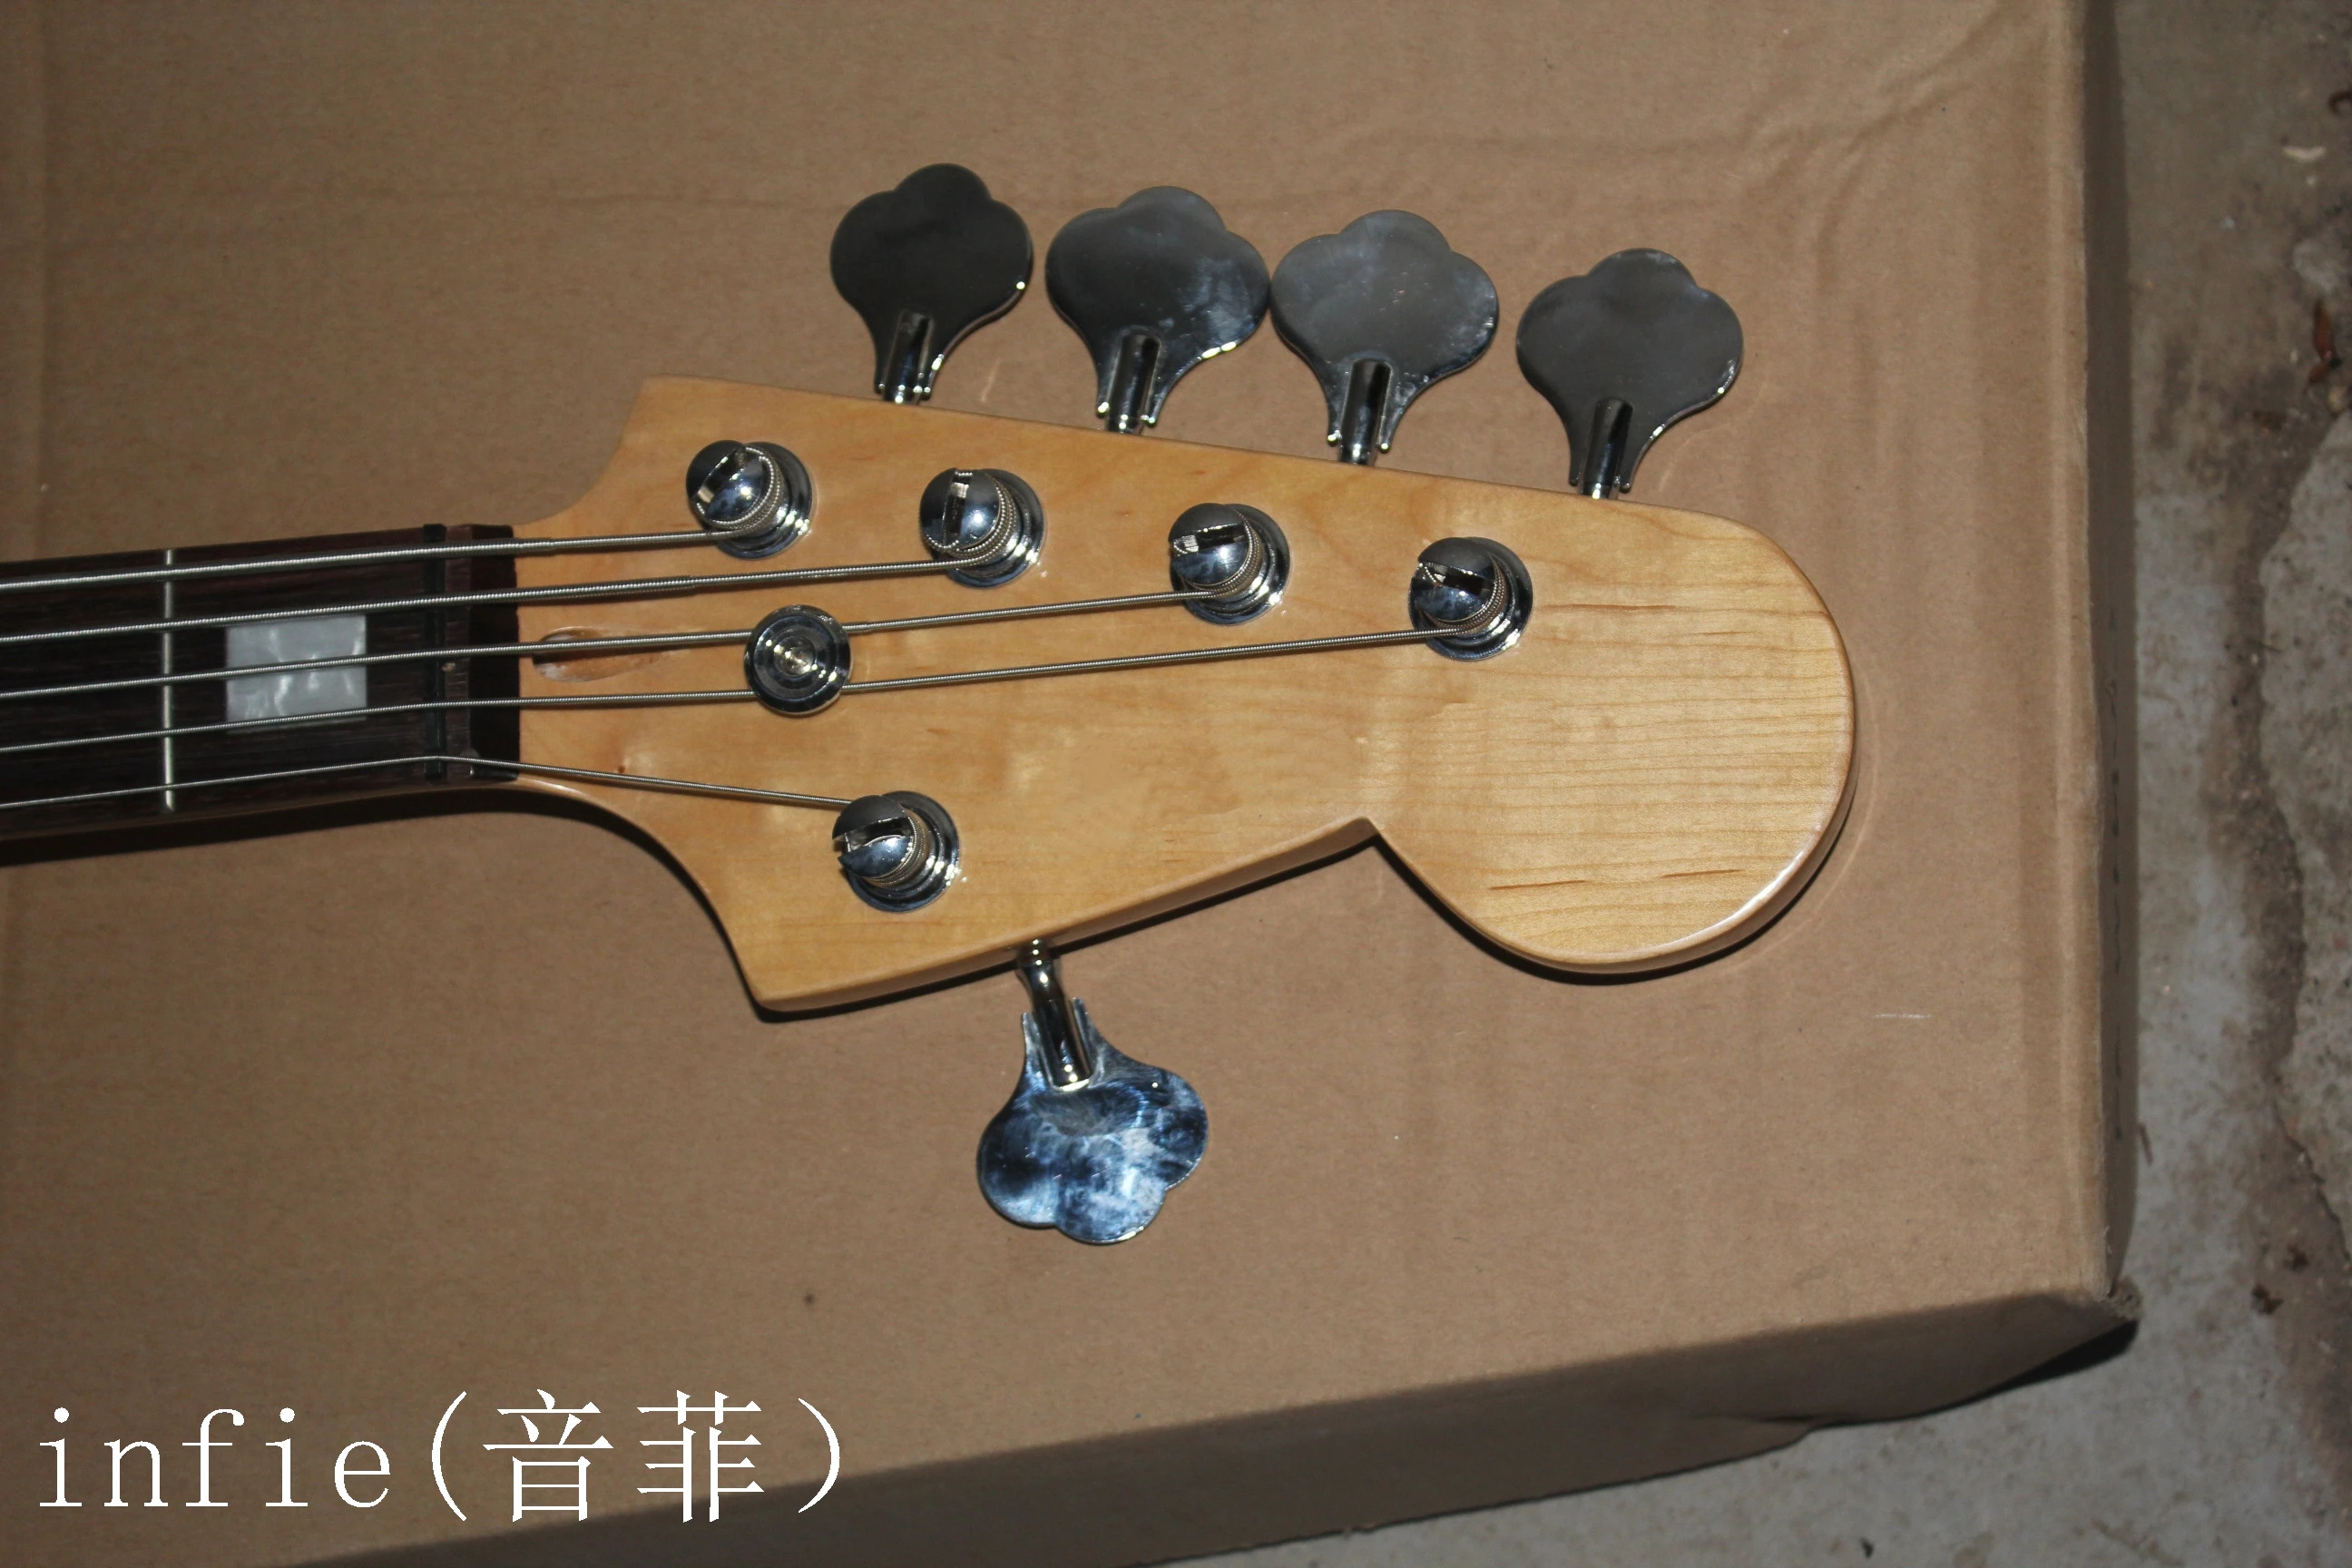 Высокое качество джаз бас 5 струна Sunburst палисандр гриф активные пикапы 9 В батарея электрический бас гитара в